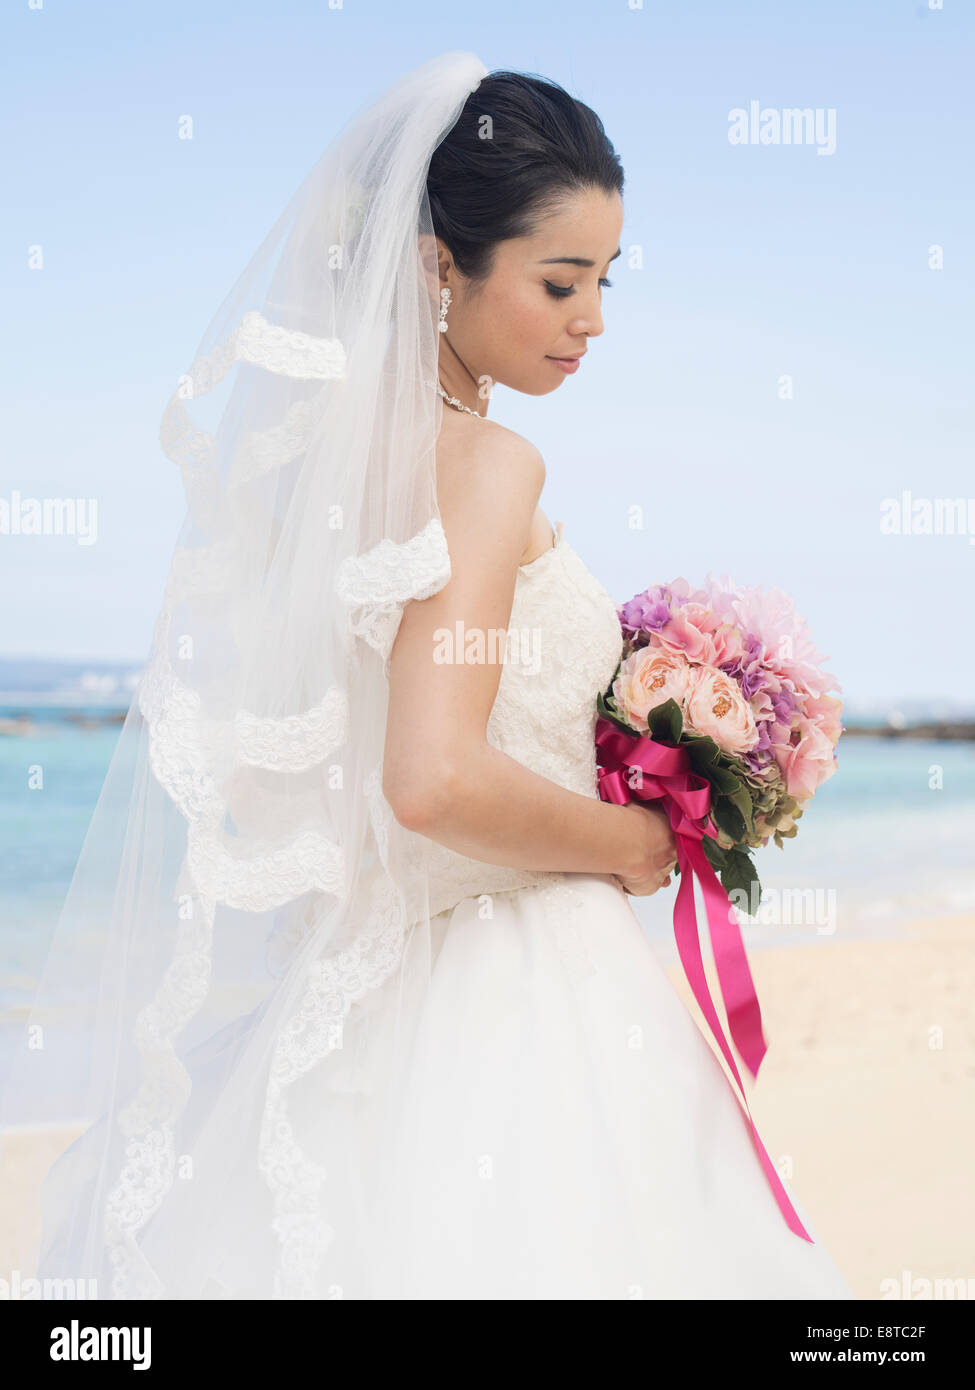 Mixed Race, asiatique / American mariée en robe de mariée blanche à destination mariage plage à Okinawa, Japon Banque D'Images